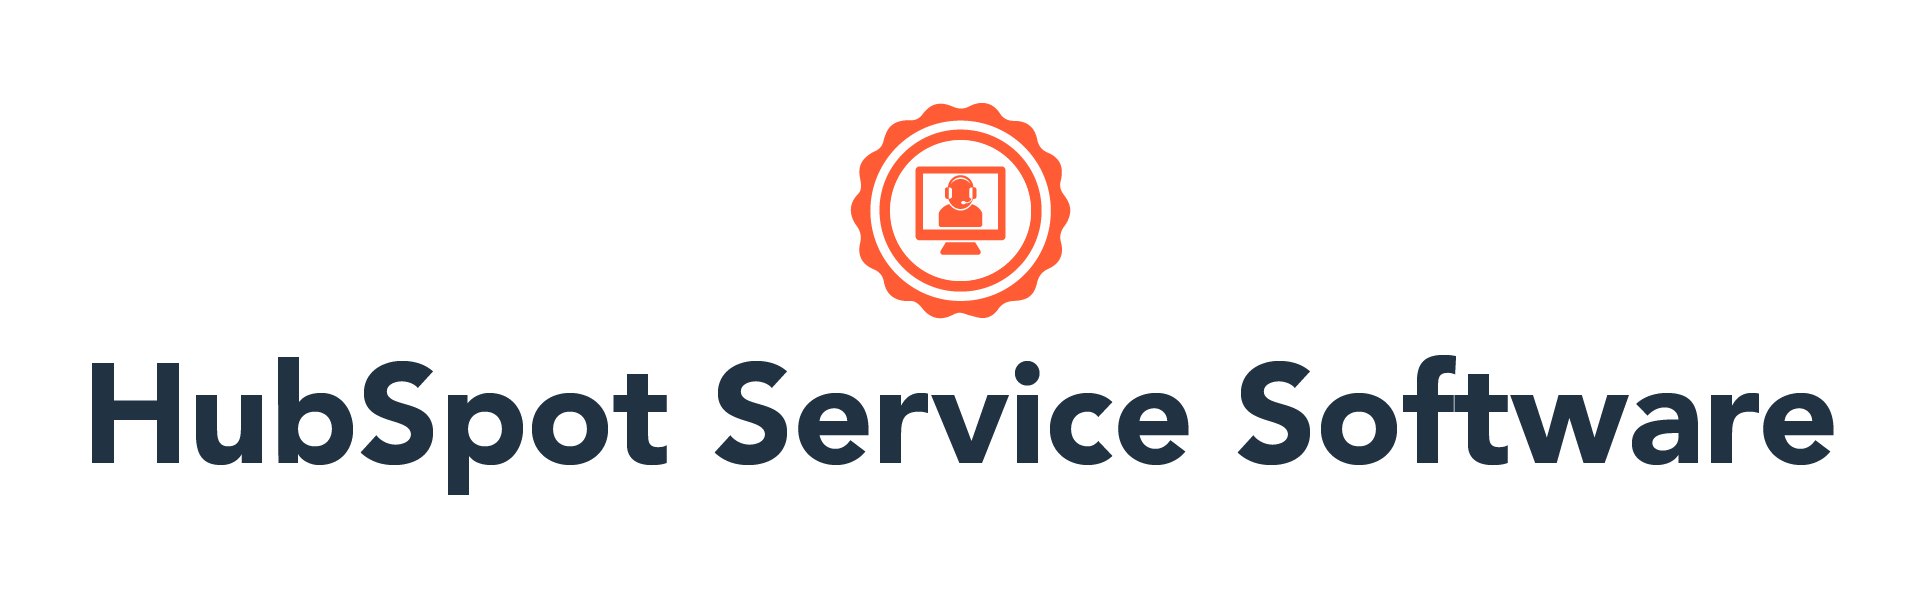 HubSpot Service Software